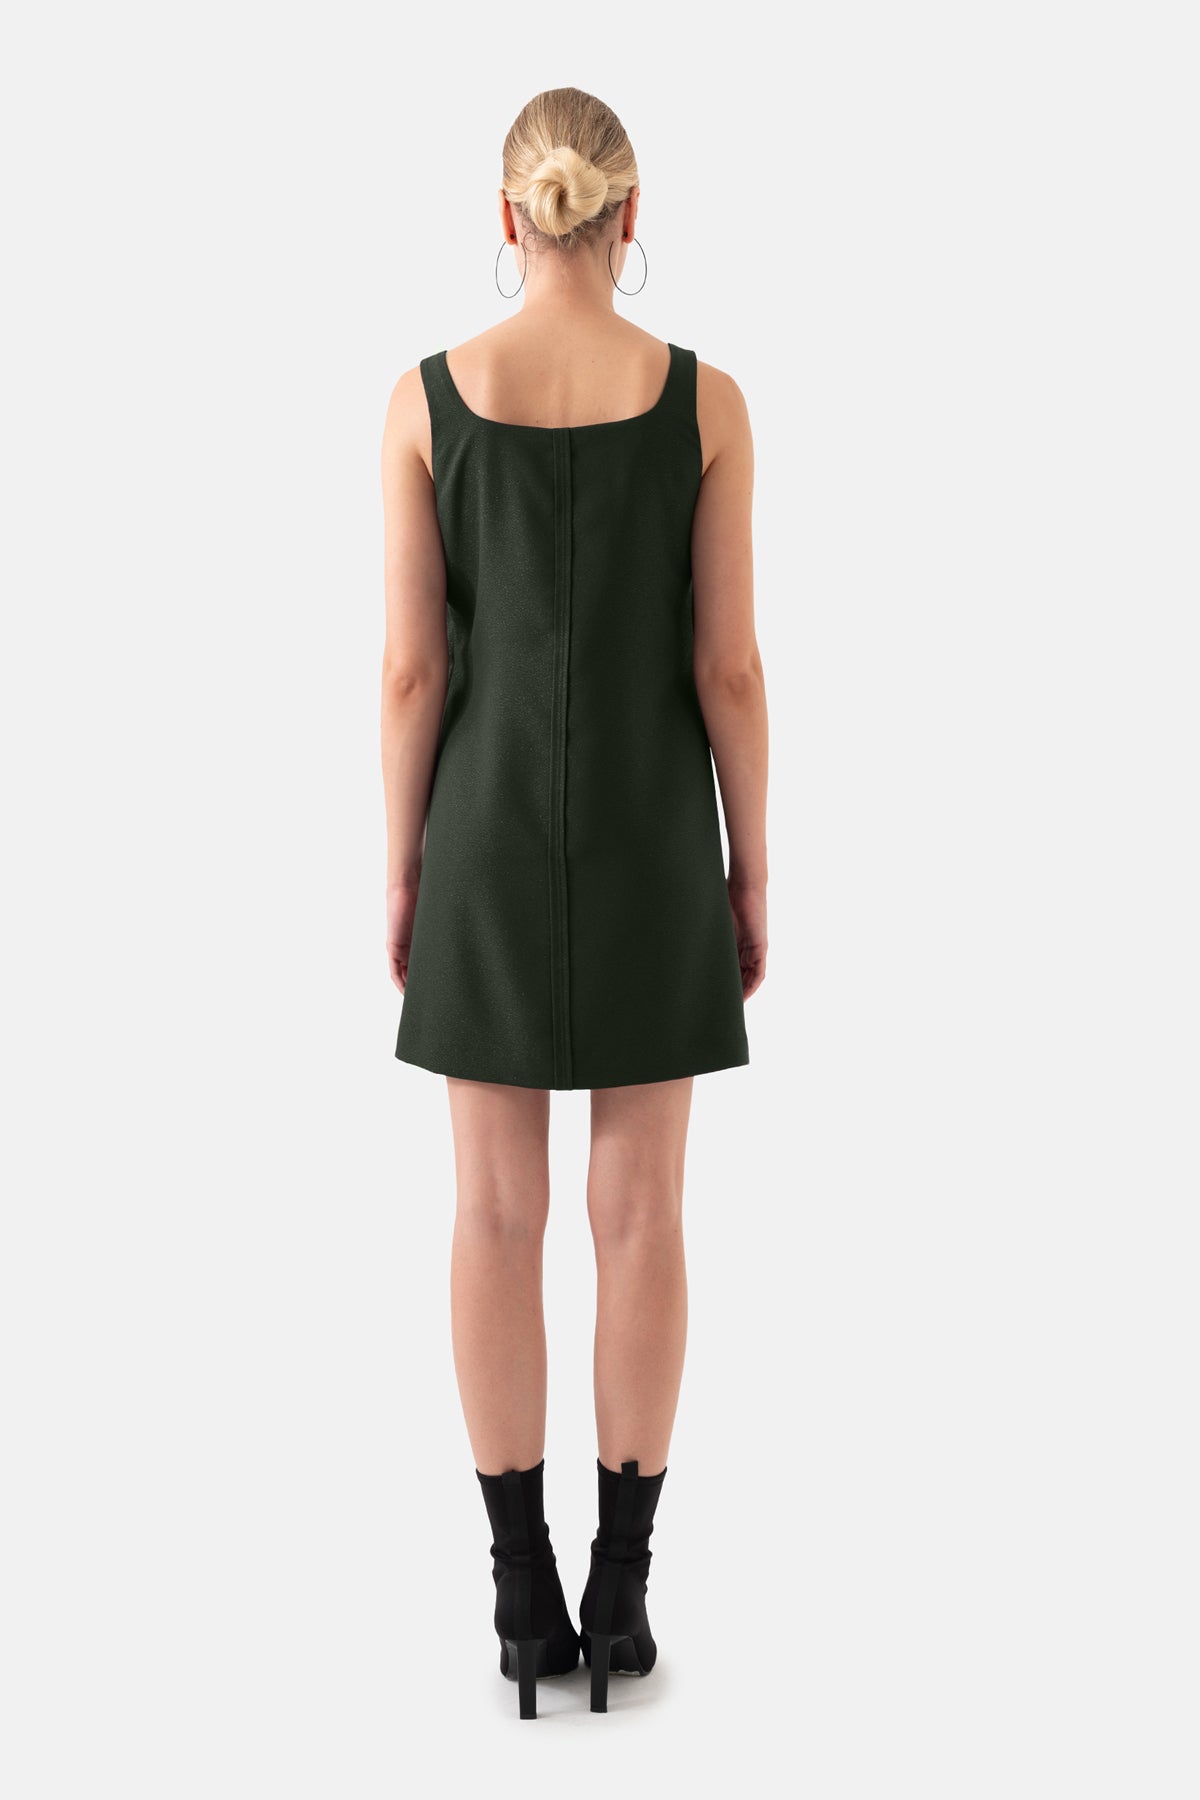 Khaki Square Collar Mini Length Women's Dress